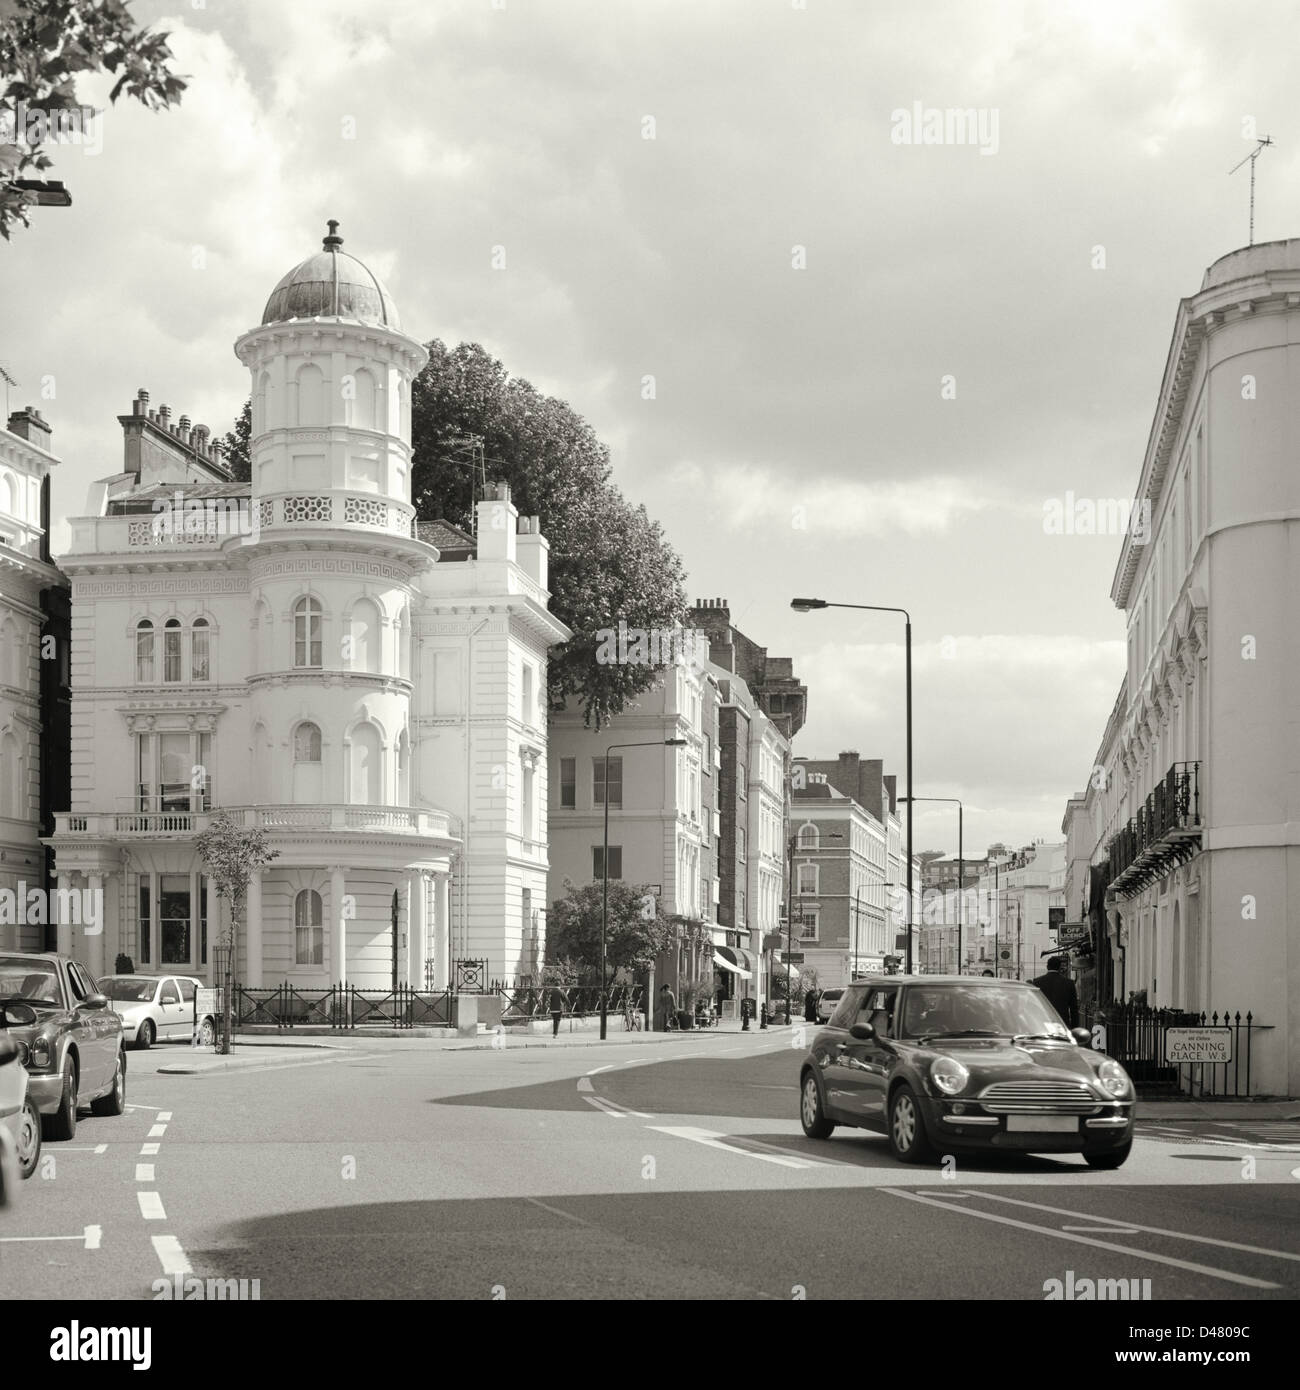 Street scene in Kensington London Stock Photo